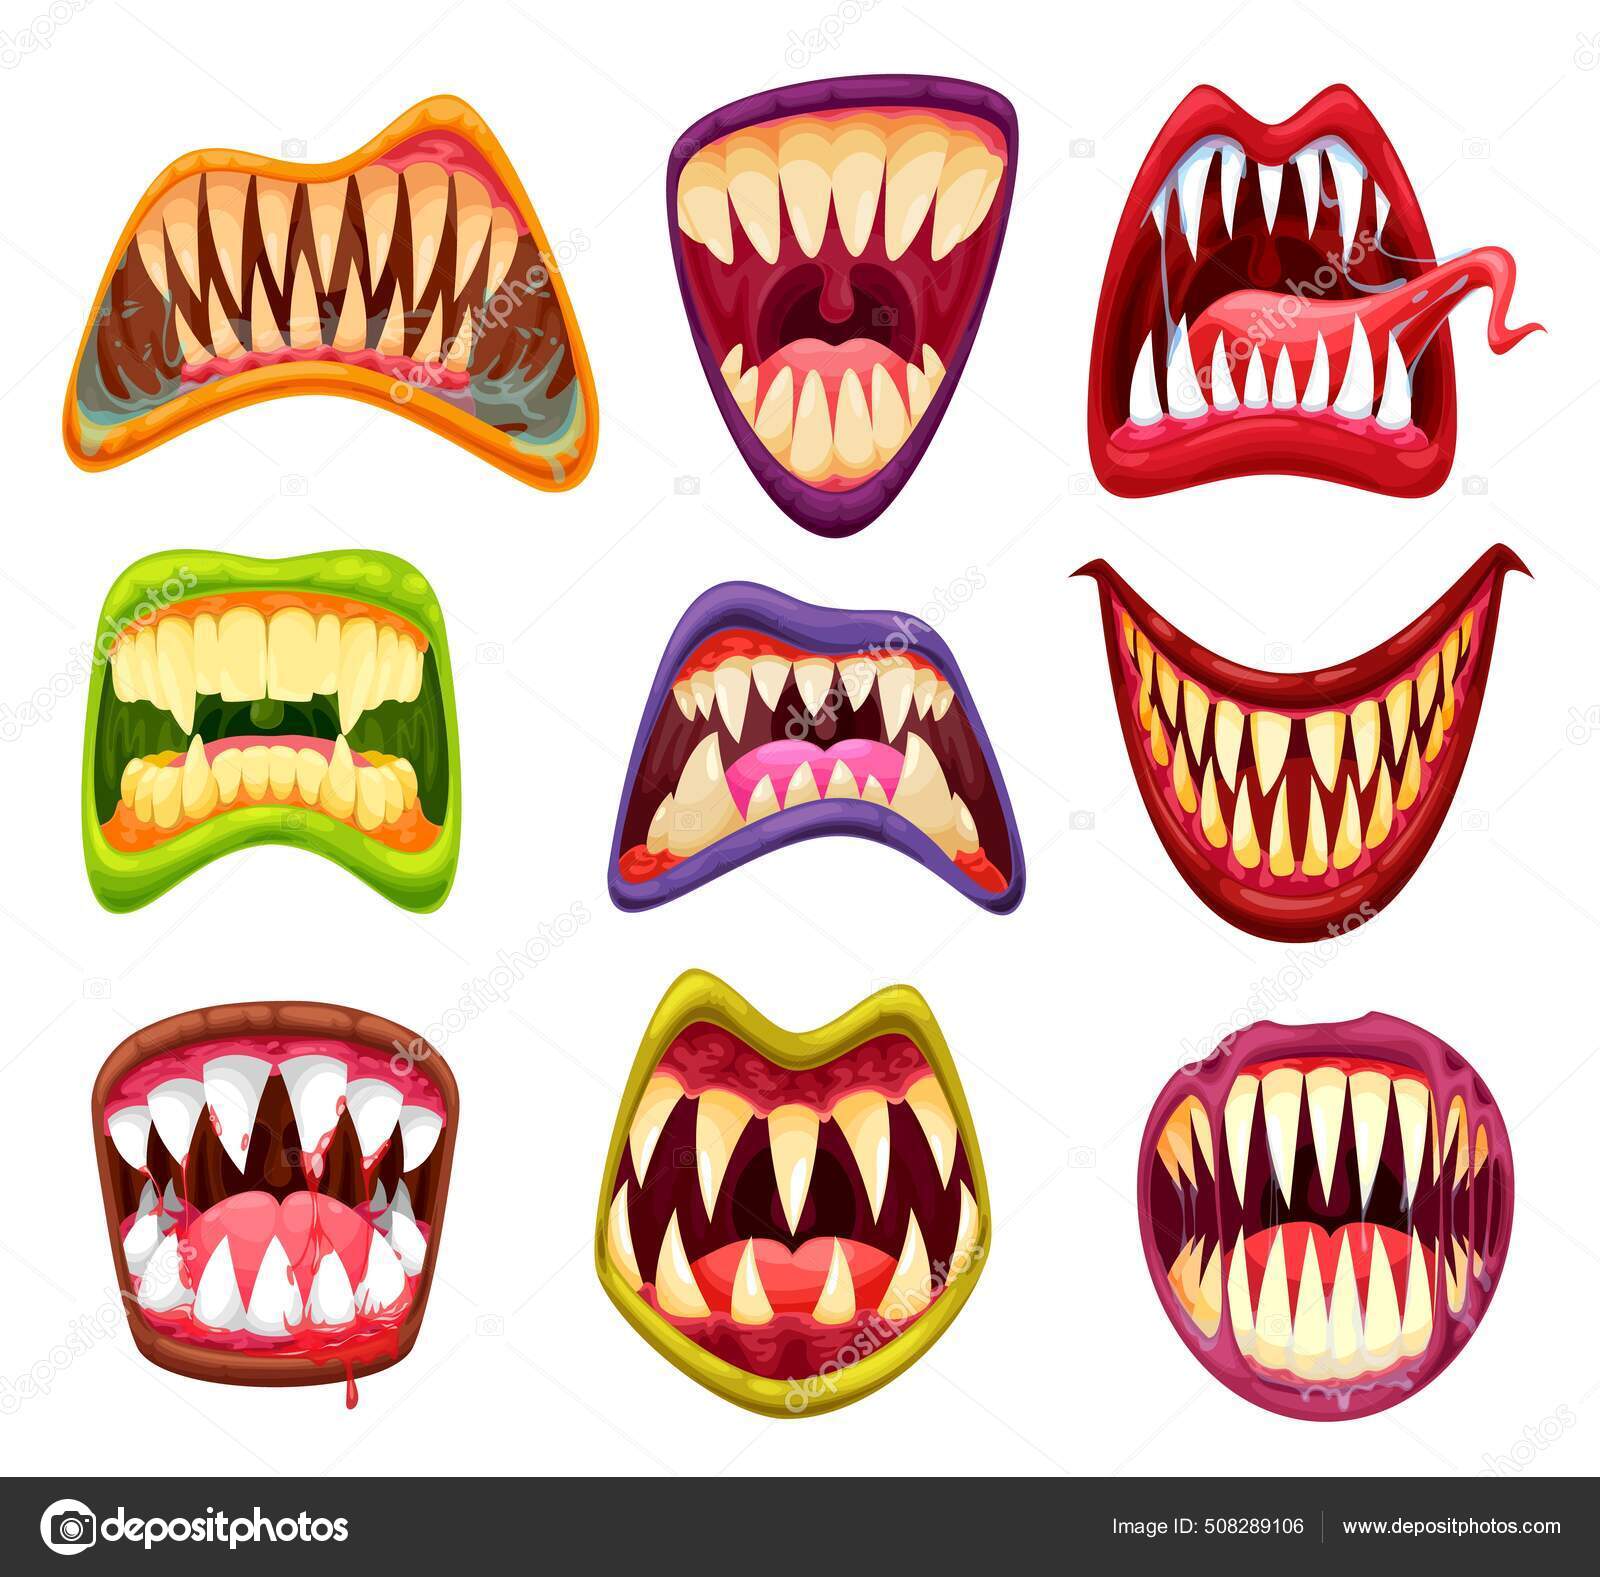 Monstro Mandíbulas Boca Língua Dentes Assustador Mal Sorriso Vetor Desenho  imagem vetorial de Seamartini© 475377198